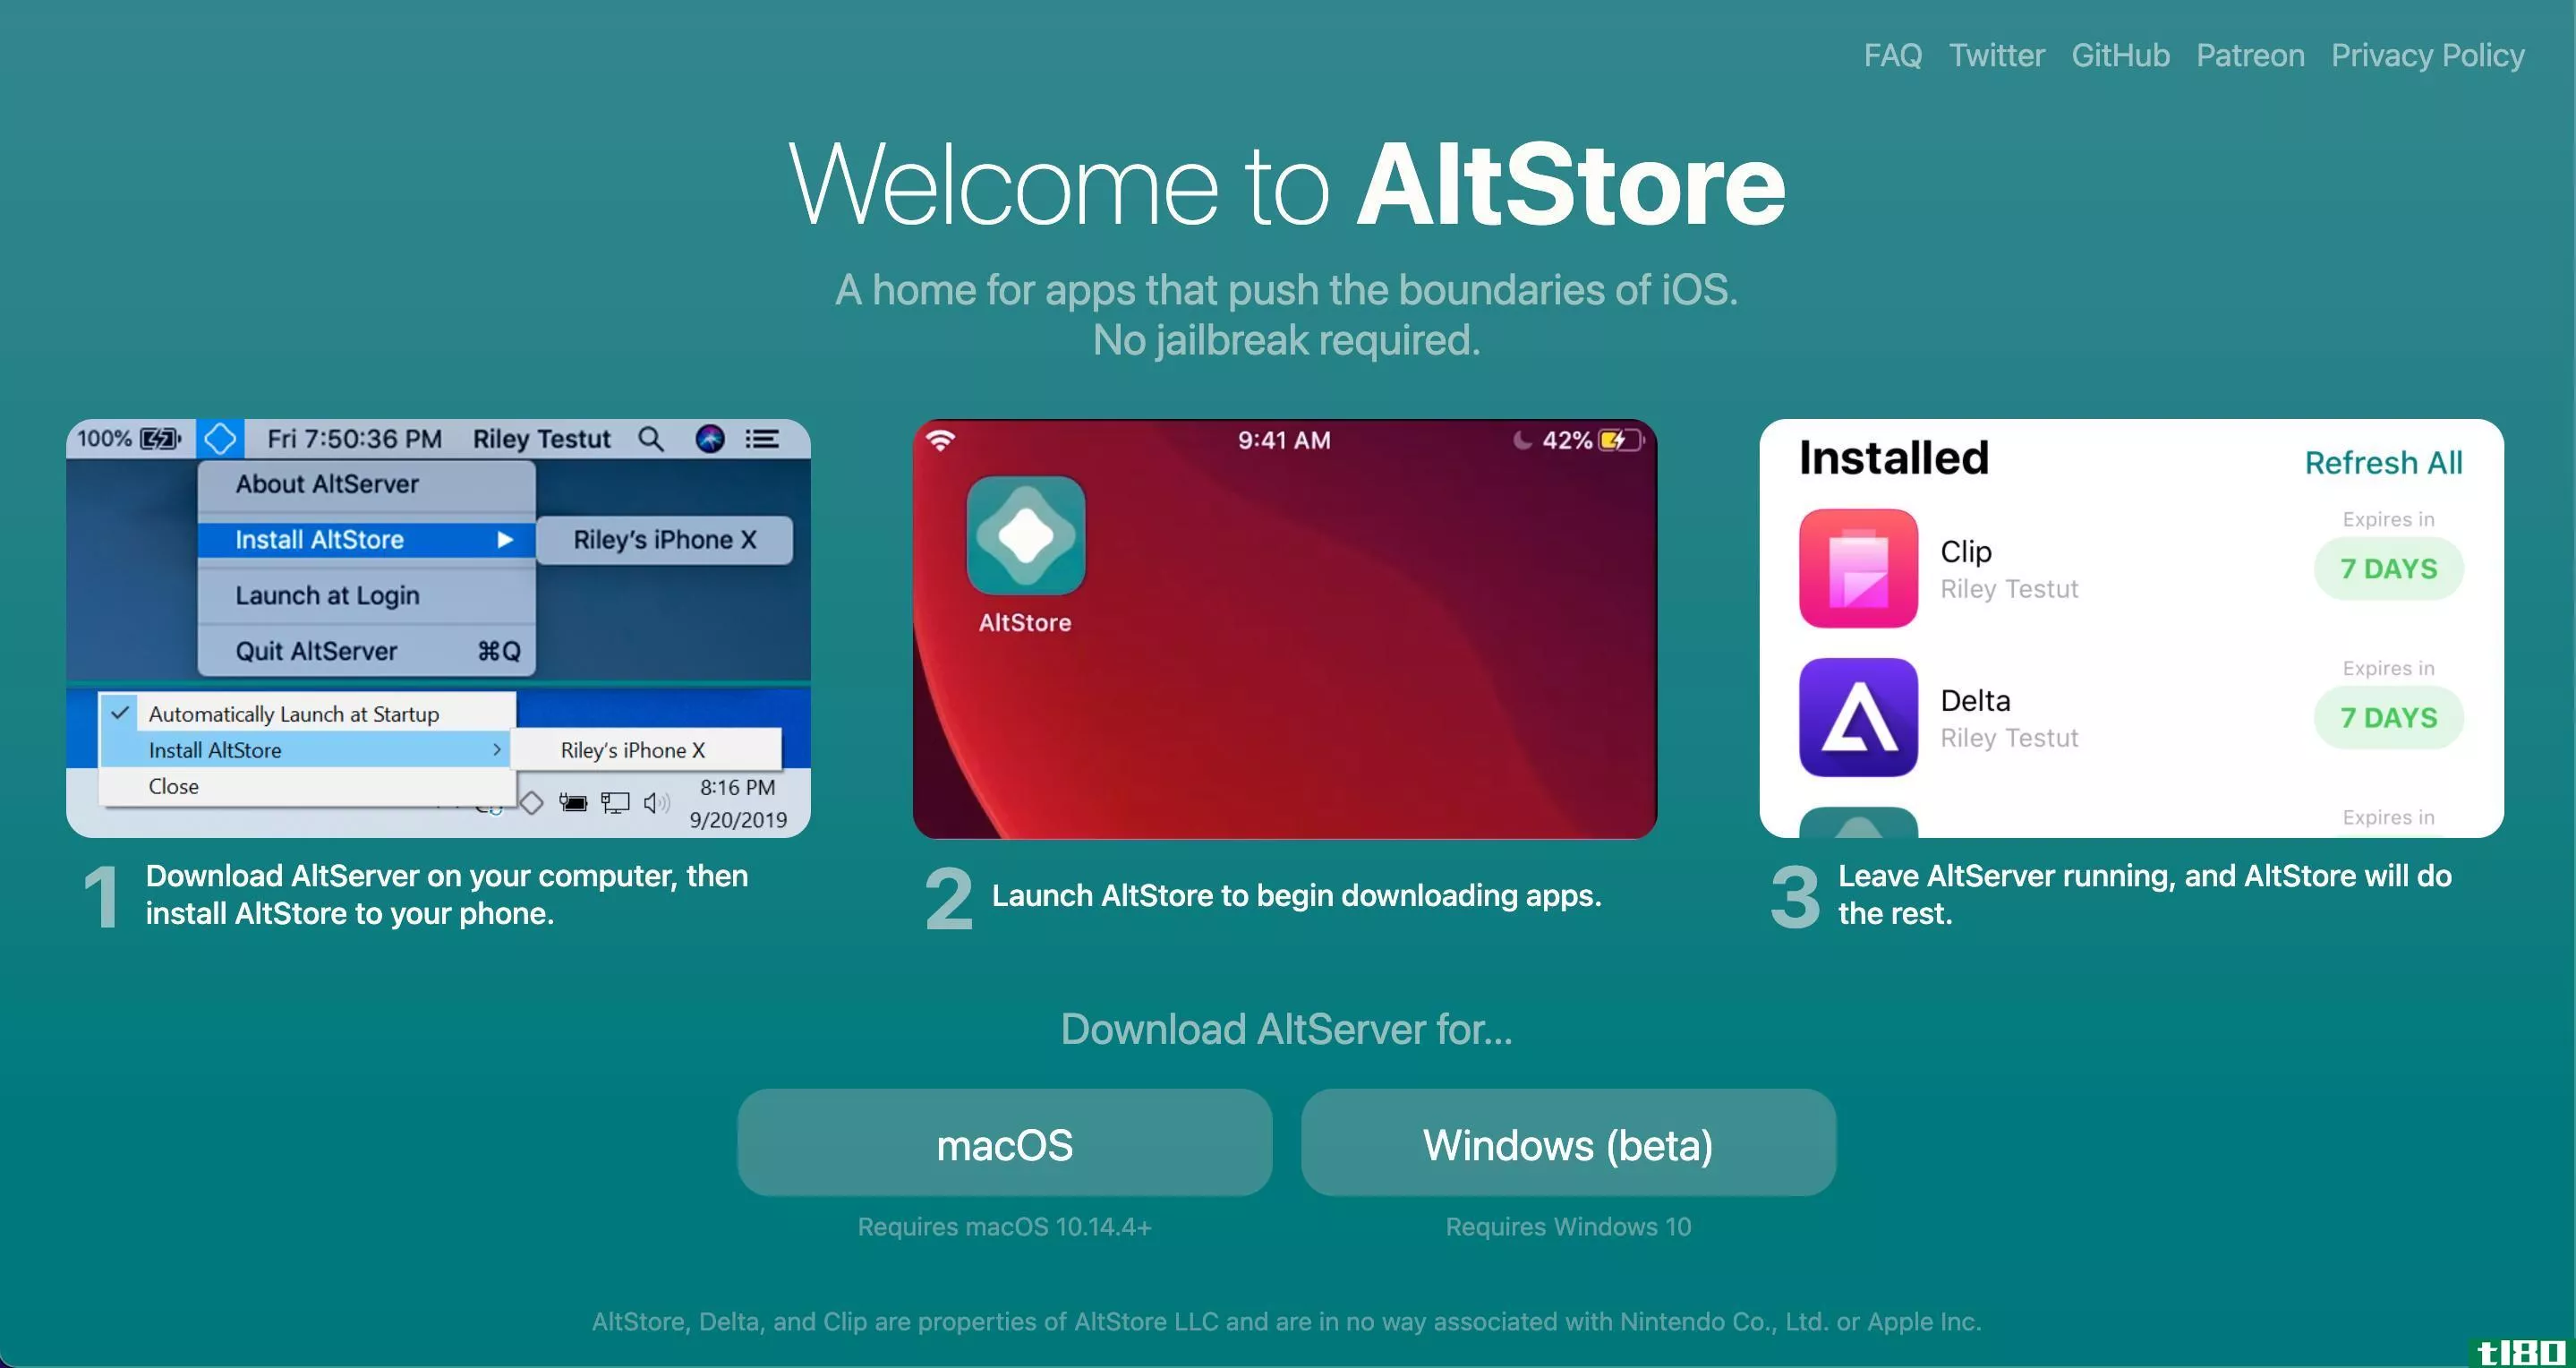 Screenshot of the AltStore website homepage